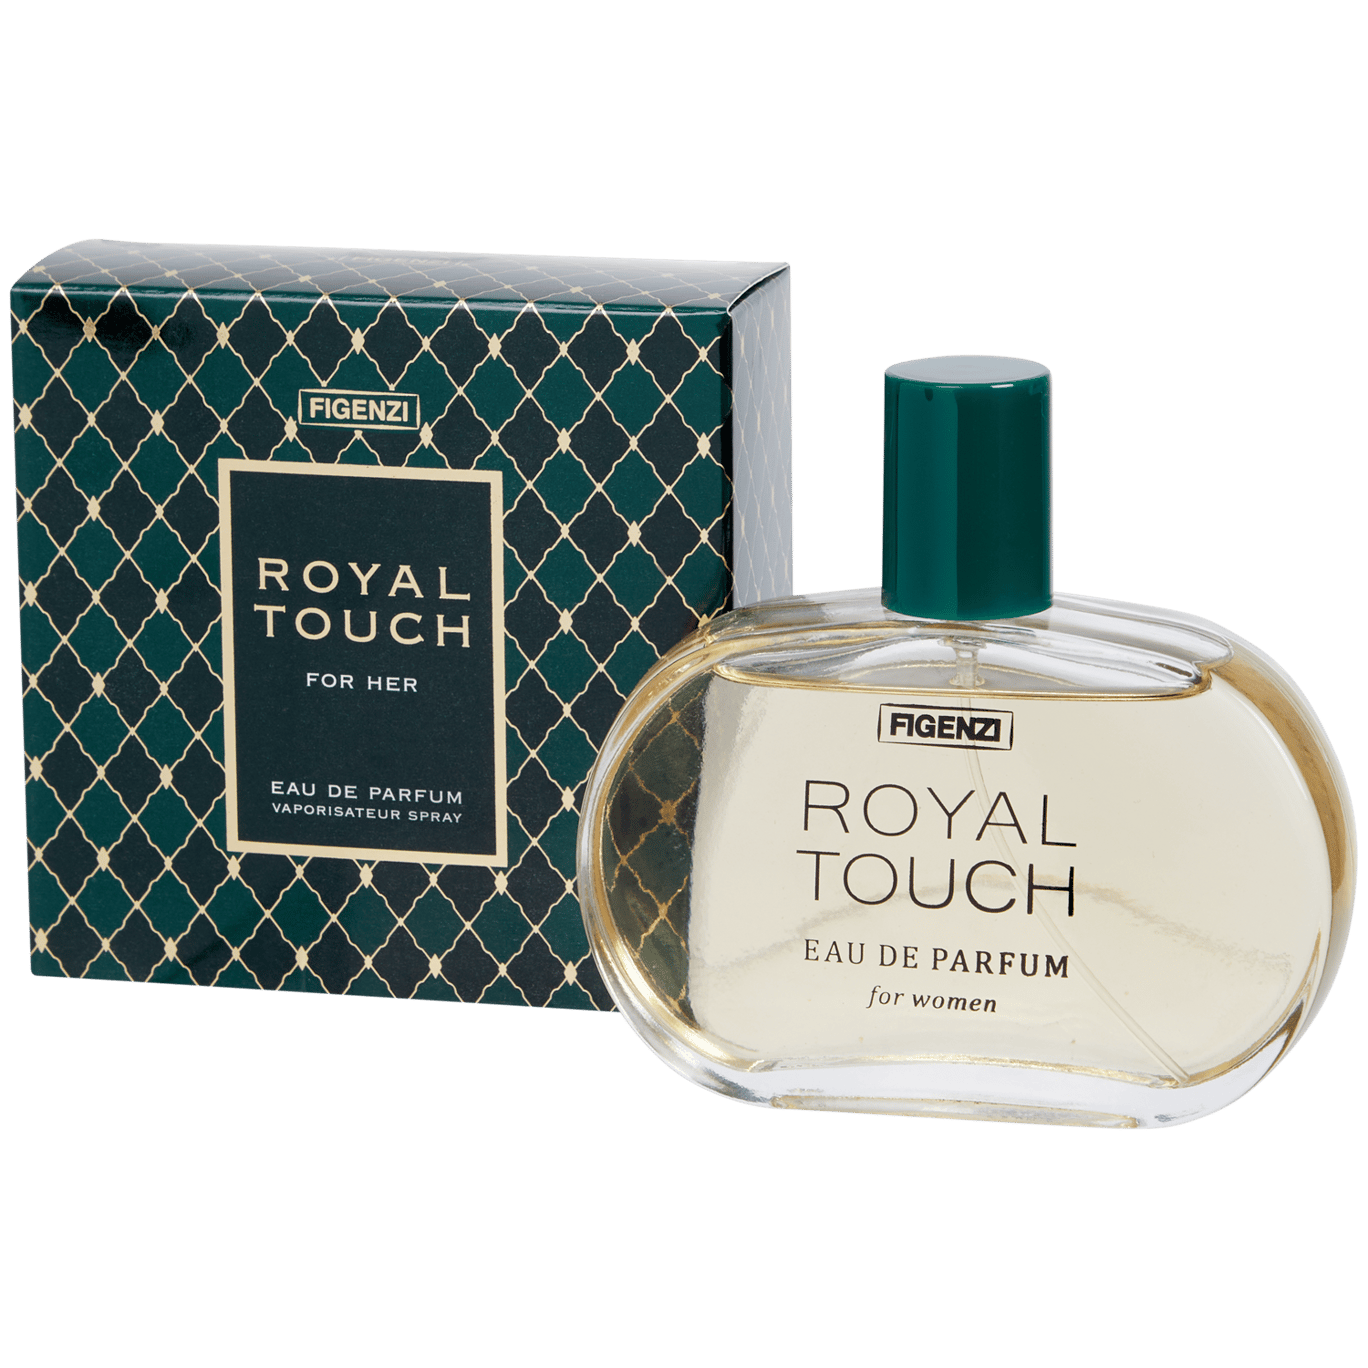 Figenzi Eau de Parfum Royal Touch